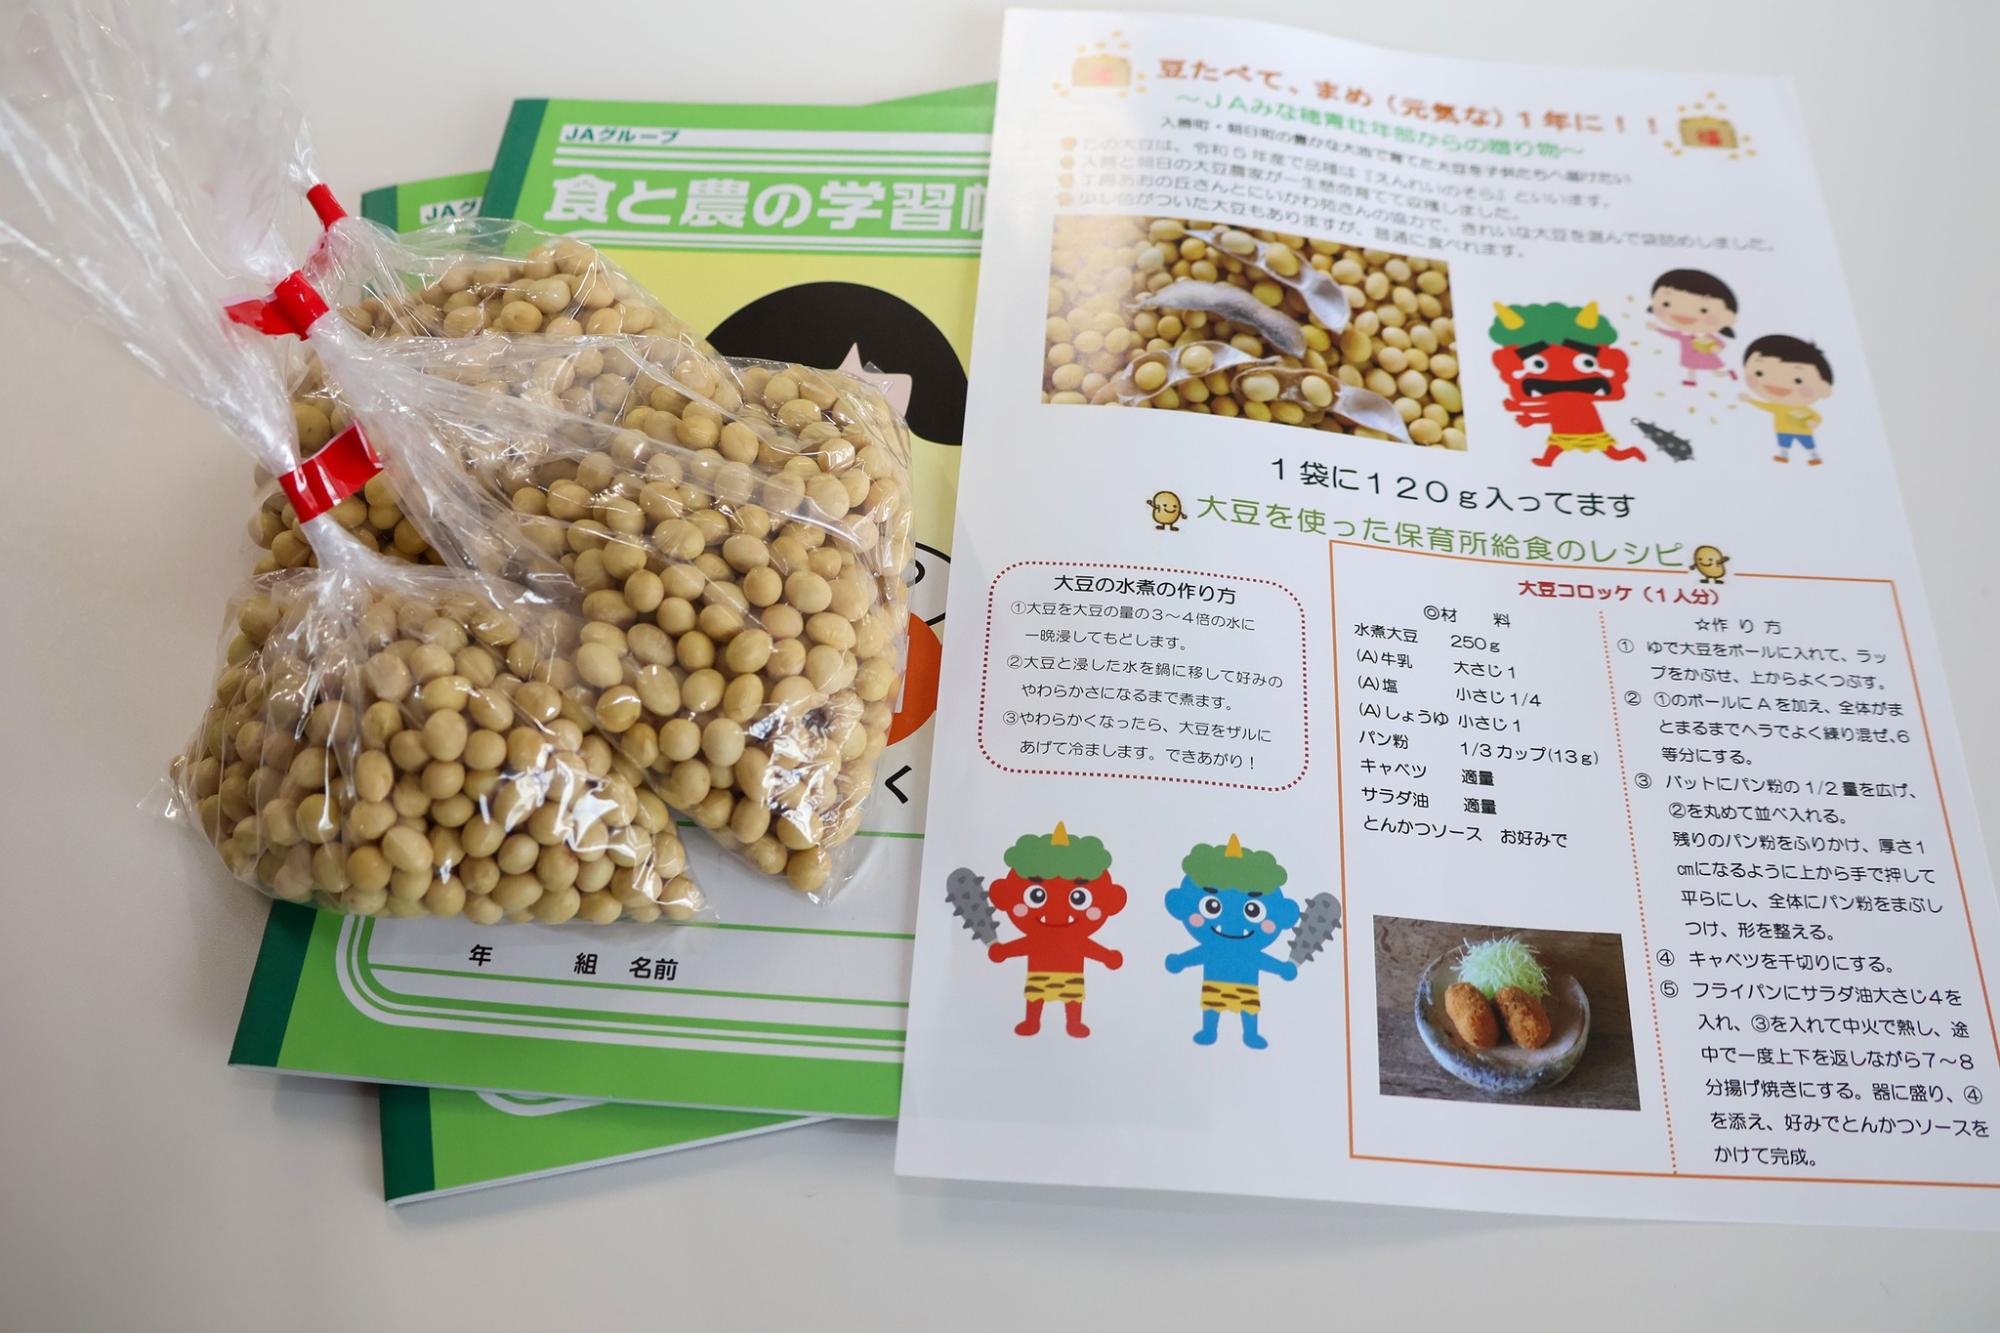 贈呈された大豆とレシピと学習ノート